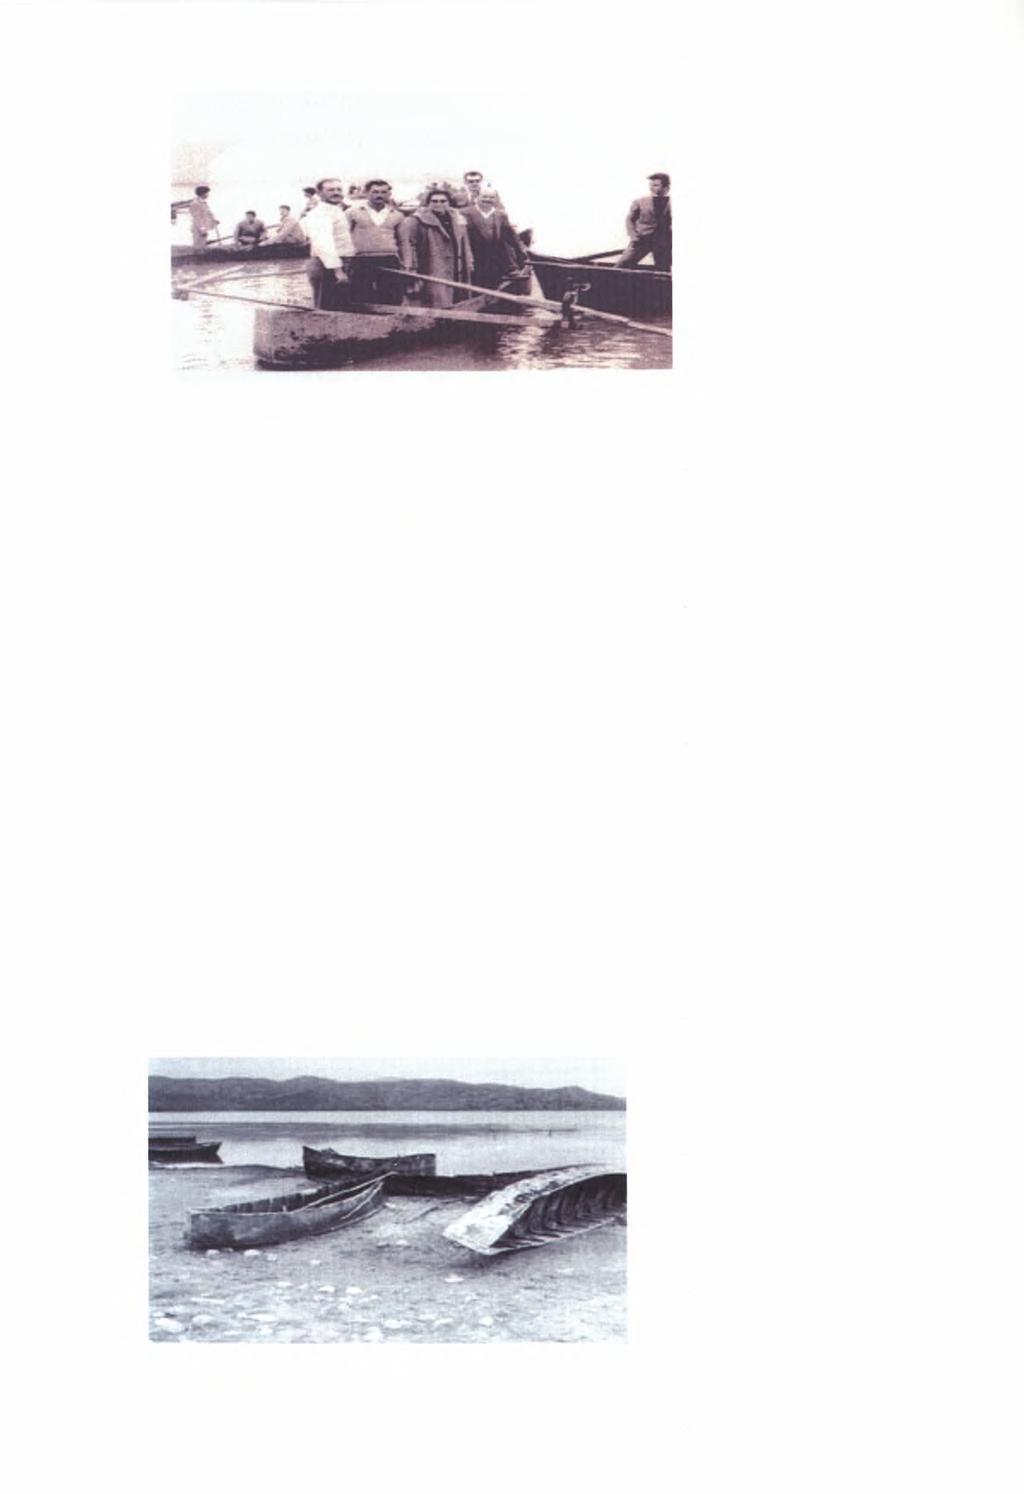 Φωτογραφία 2. Ψαράδες, κάτοικοι των παρακάρλιων περιοχών (Εξαρχόπουλος, 1999). Ζούσαν μακριά από τα σπίτια τους για εννέα μήνες σε ομάδες δύο έως έξι ατόμων.